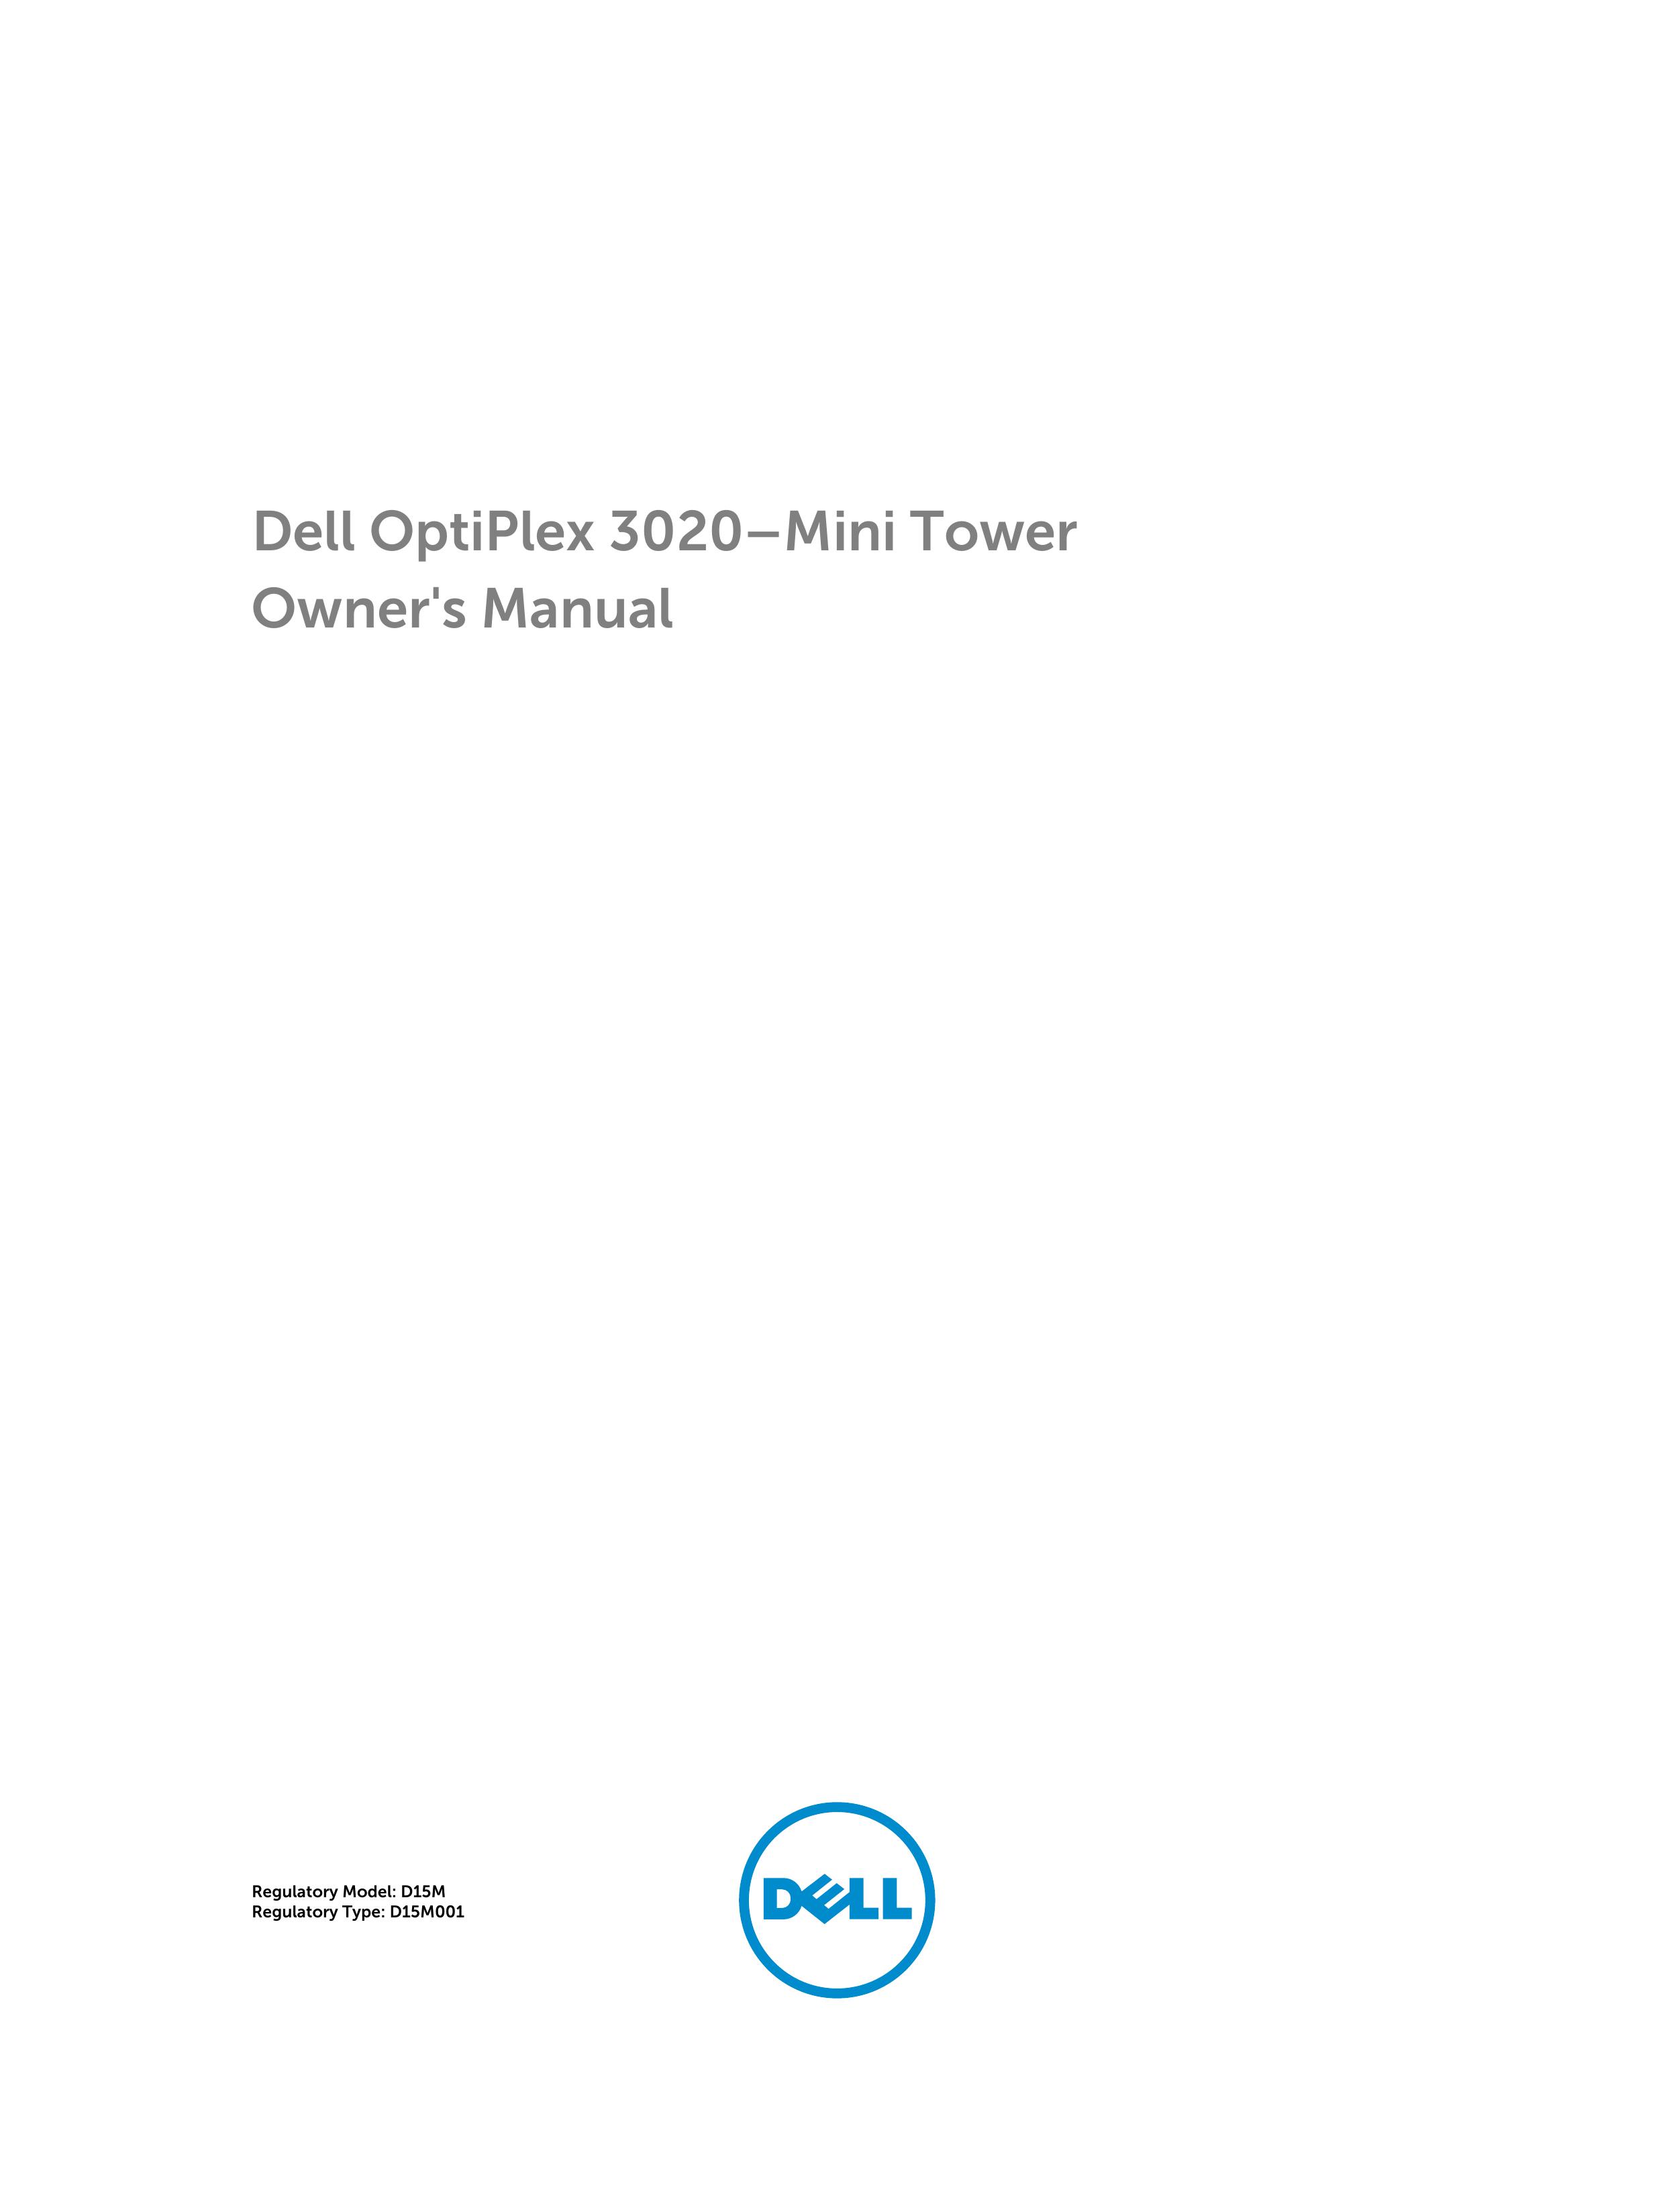 Dell D15M Telescope User Manual